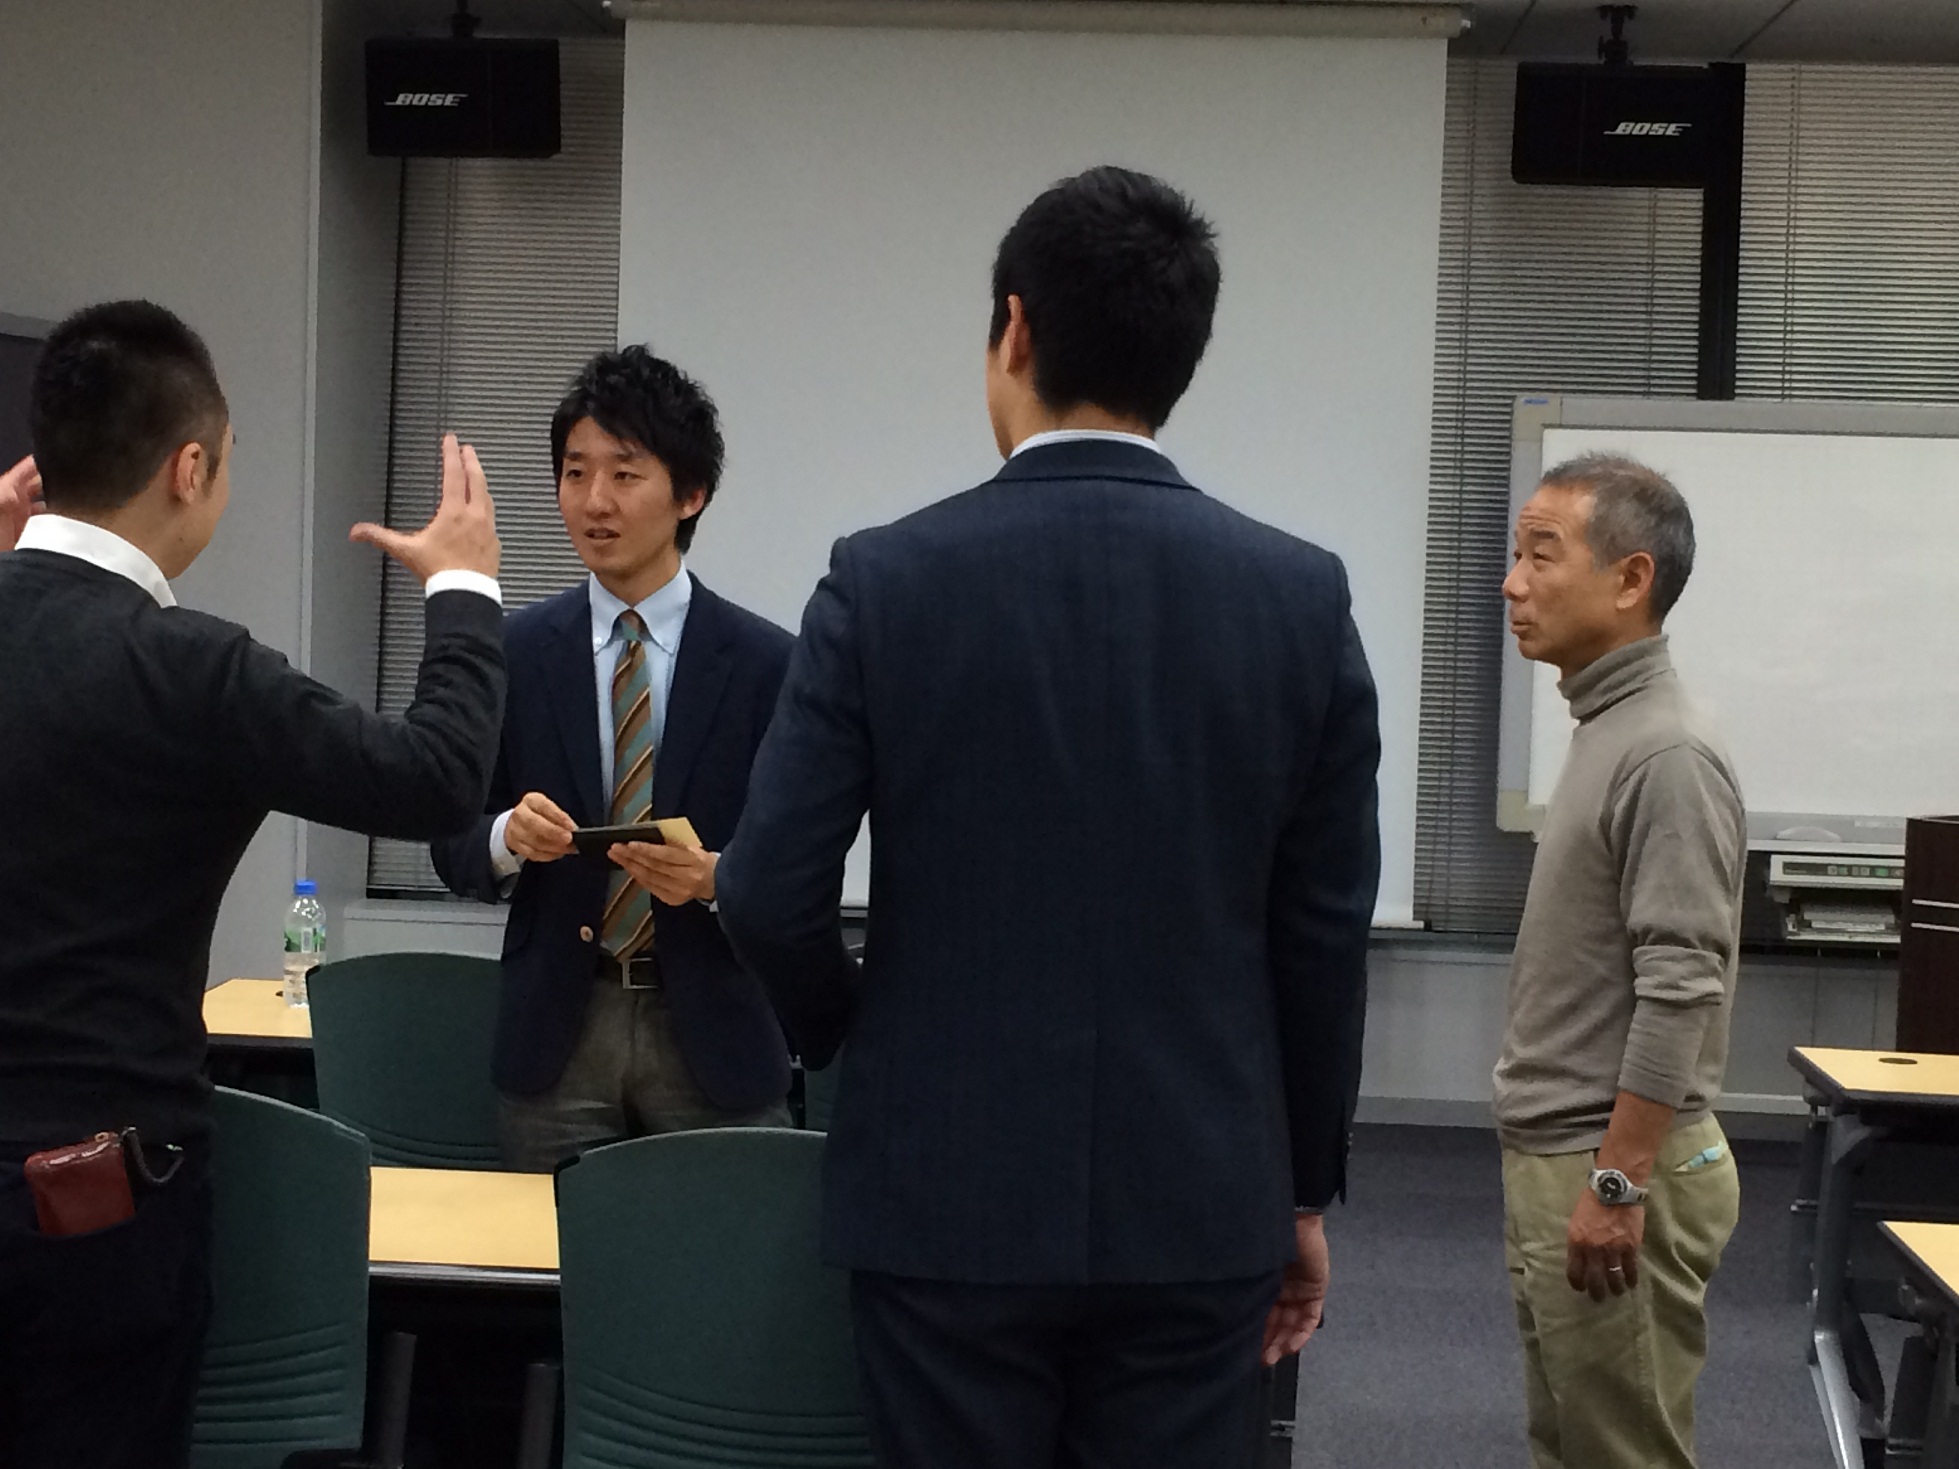 カルチュア・コンビニエンス・クラブ様およびTポイント・ジャパン様のイベントで代表の今井が講演しました。